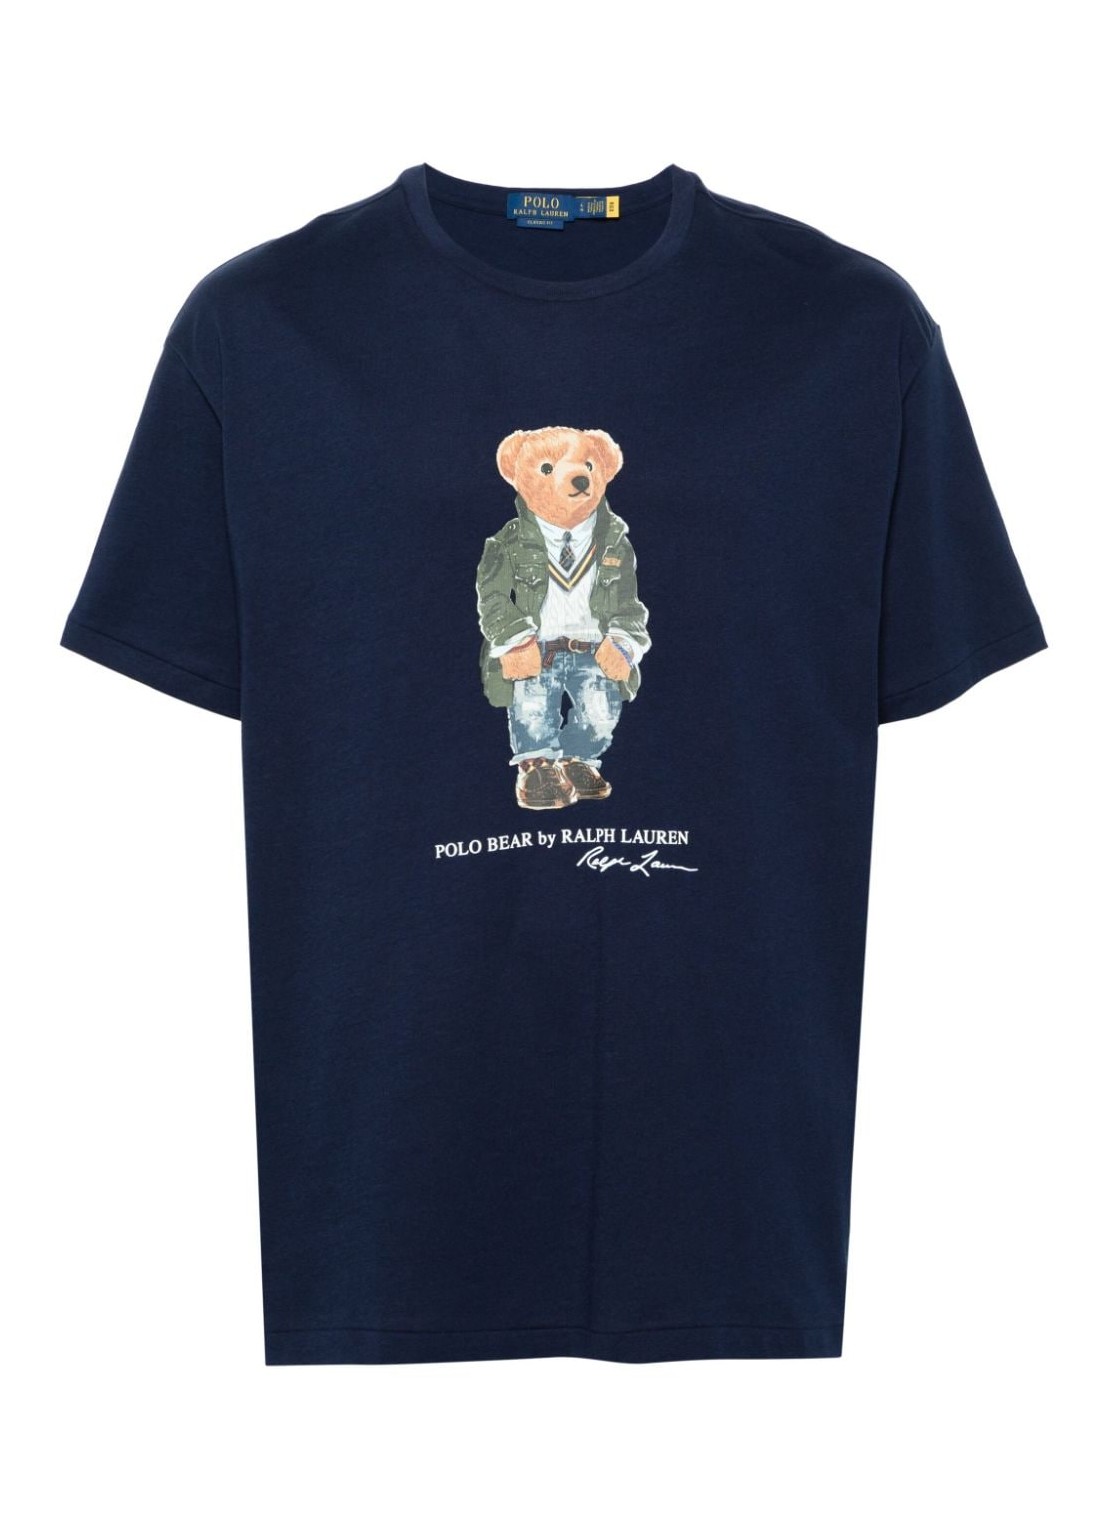 Camiseta polo ralph lauren t-shirt man sscnclsm1-short sleeve-t-shirt 710854497034 sp24 newport navy